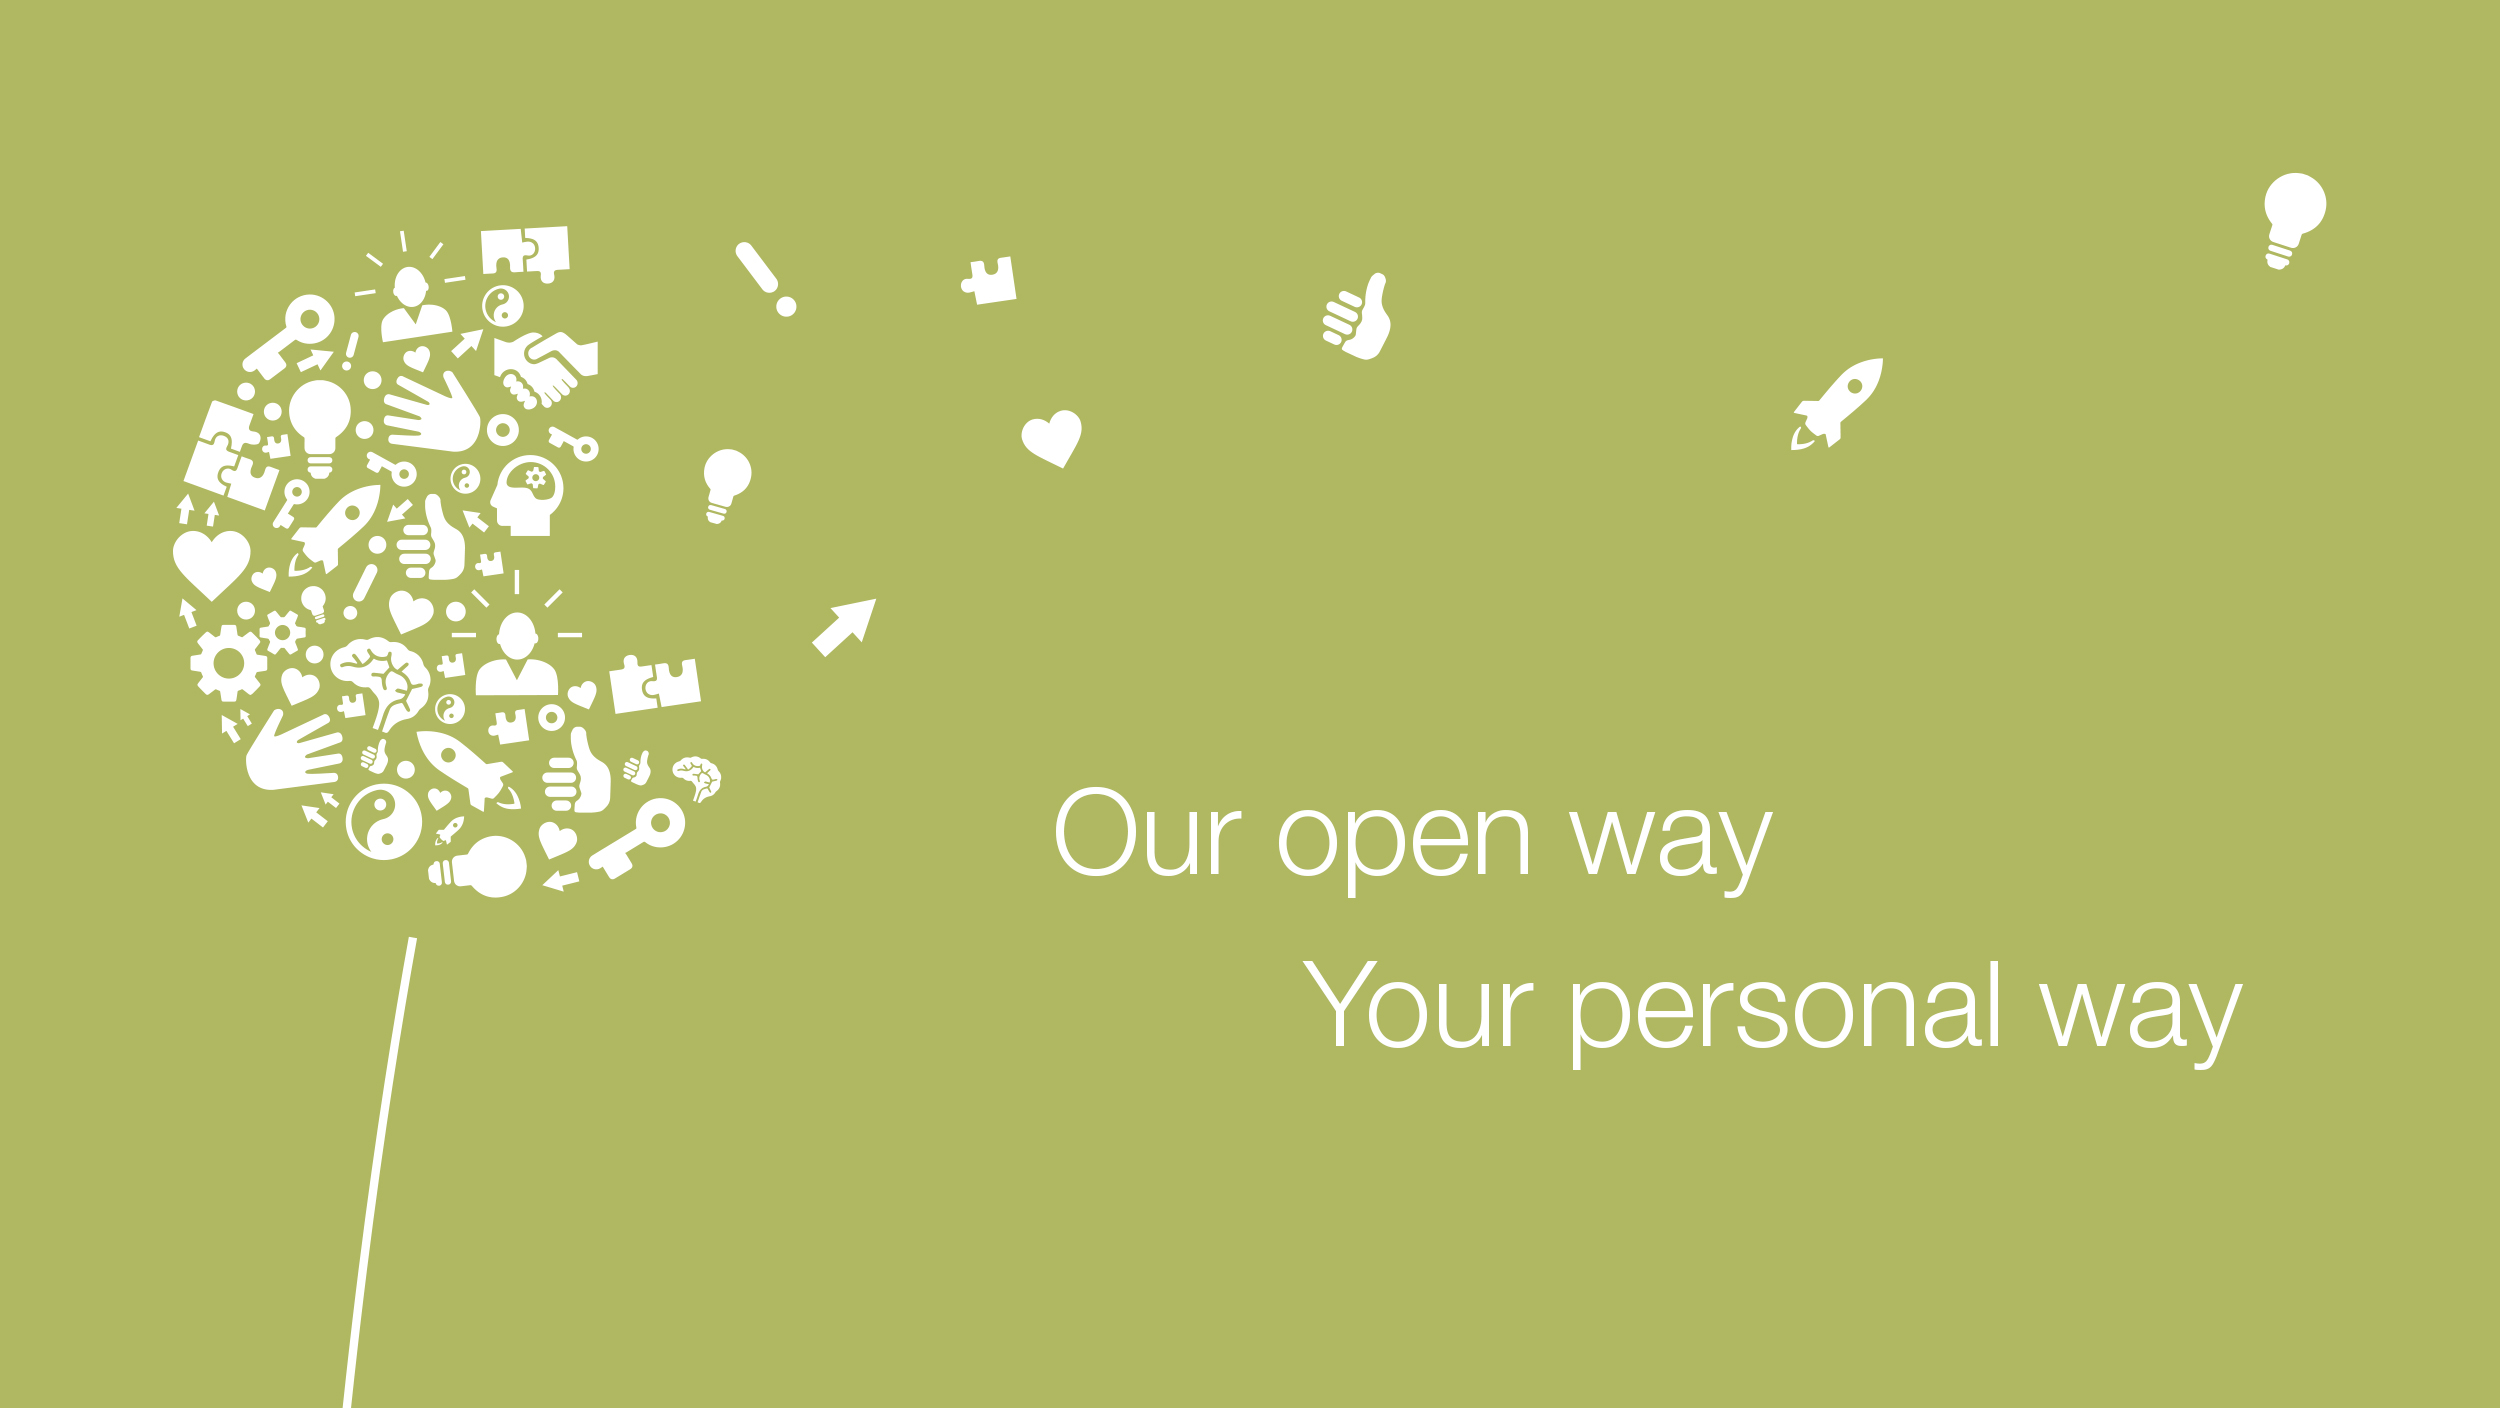 Pitypang ikonokból, a következő szlogen mellett: Nyitott ajtóink az Ön számára perspektívát jelentenek